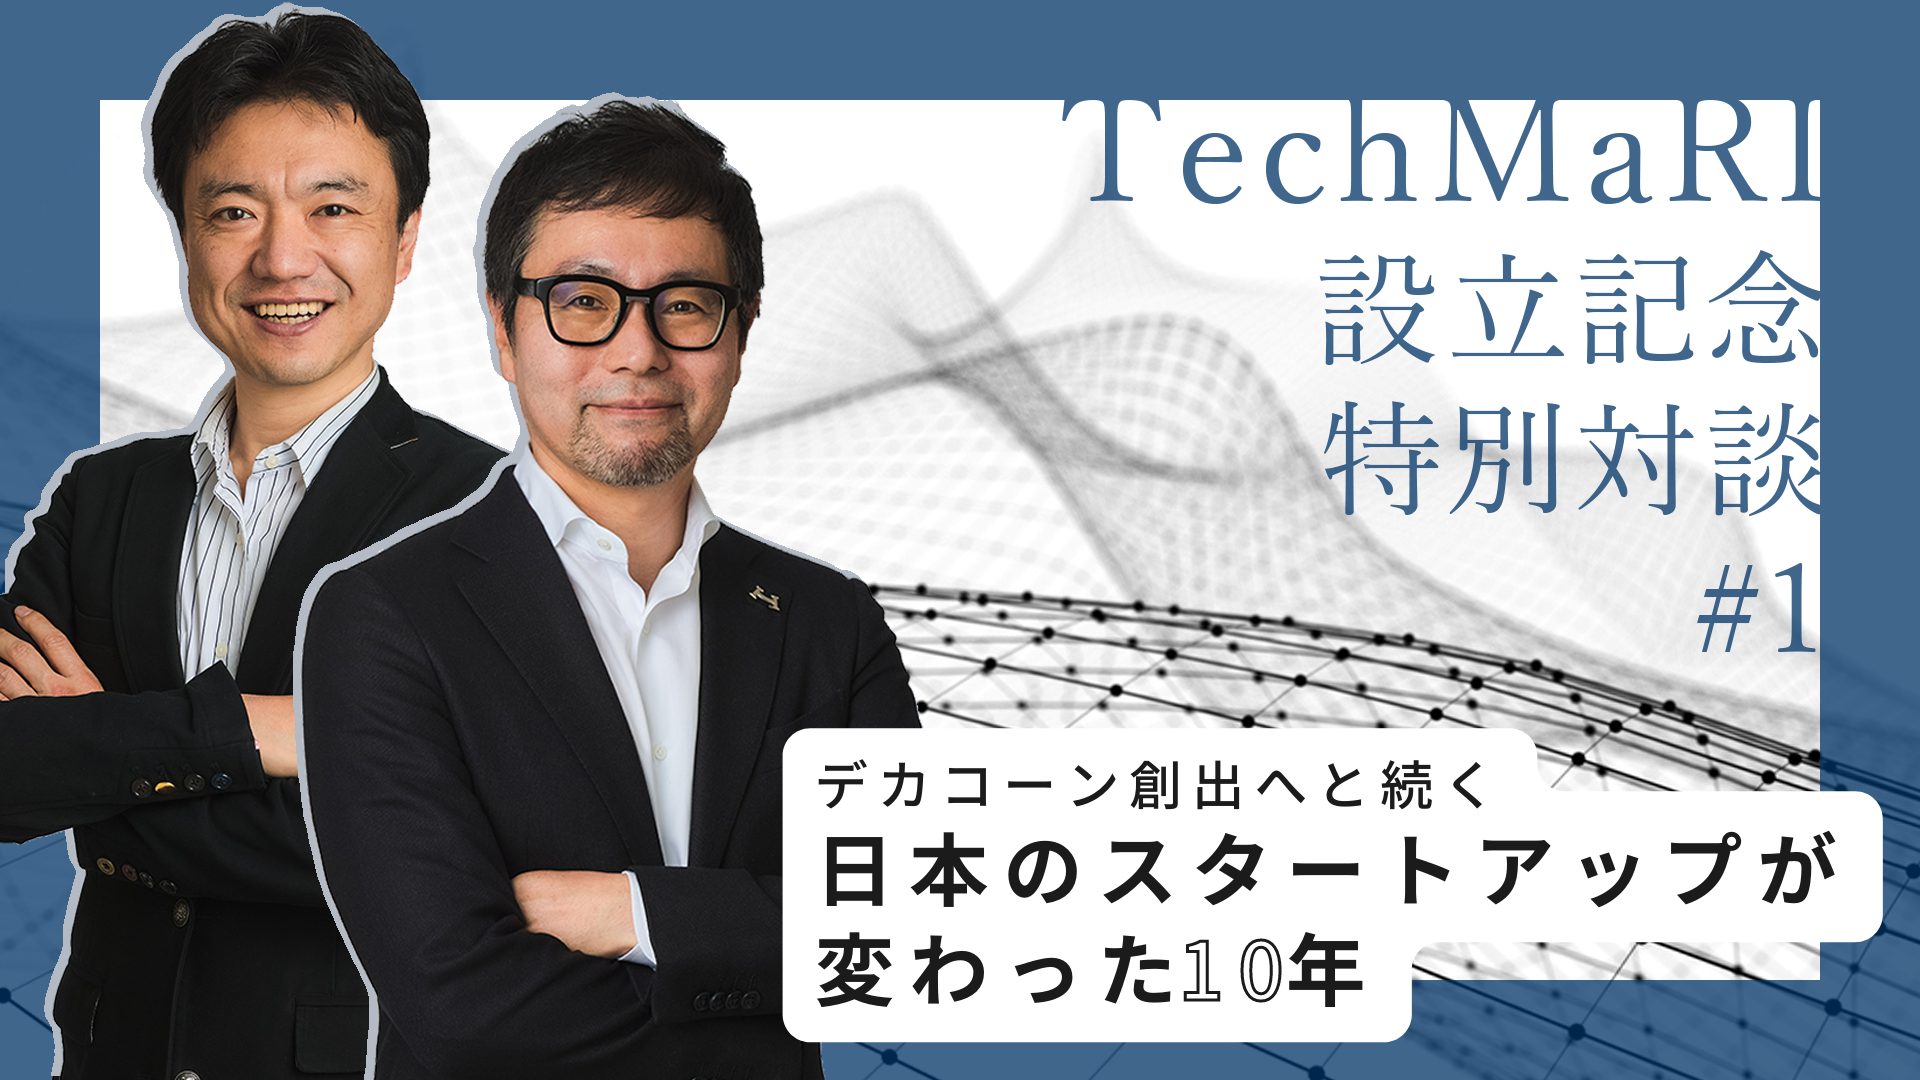 デカコーン創出へと続く、日本のスタートアップが変わった10年――テクノベート経営研究所設立記念 特別対談 #1